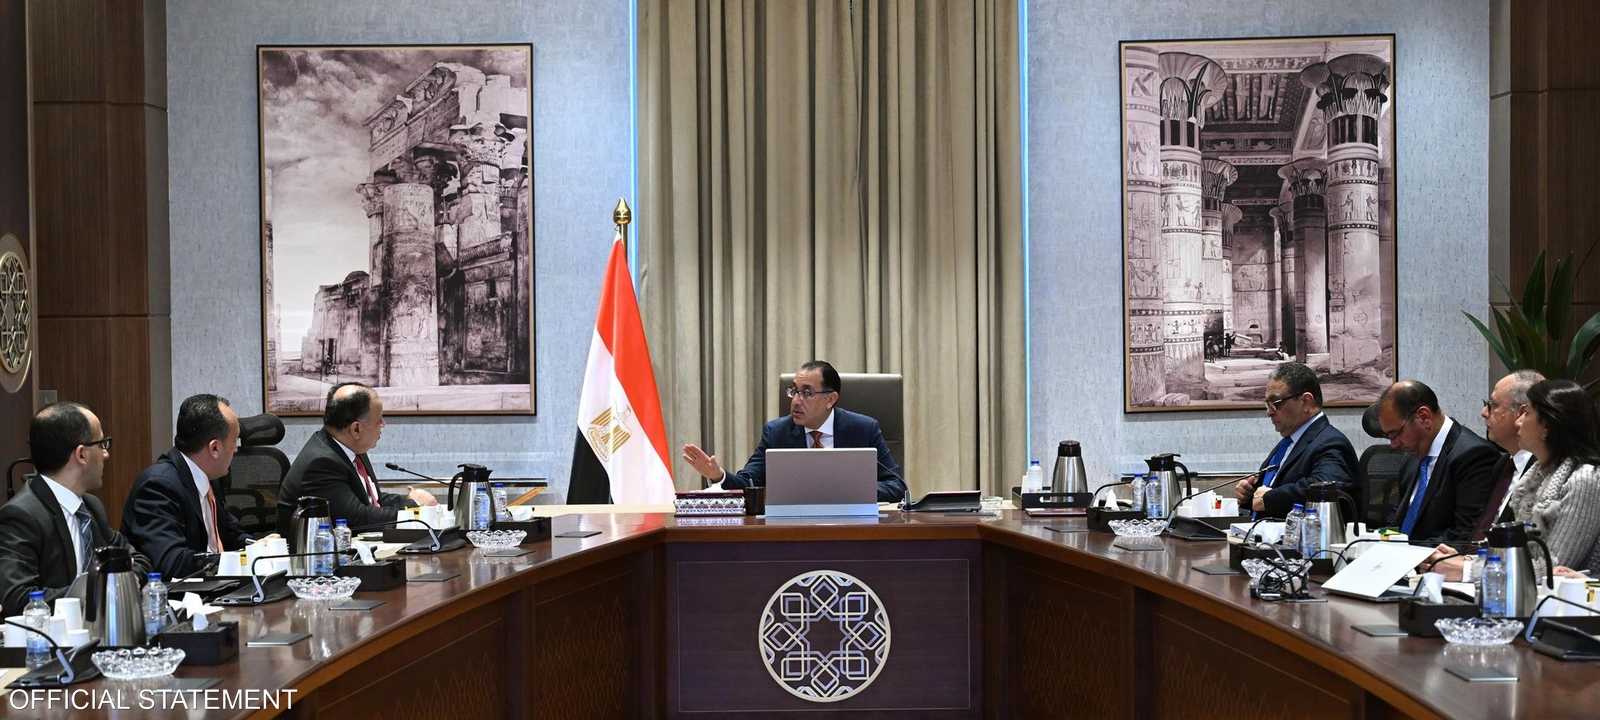 مجلس الوزراء المصري مصطفى مدبولي الحكومة المصرية مصر